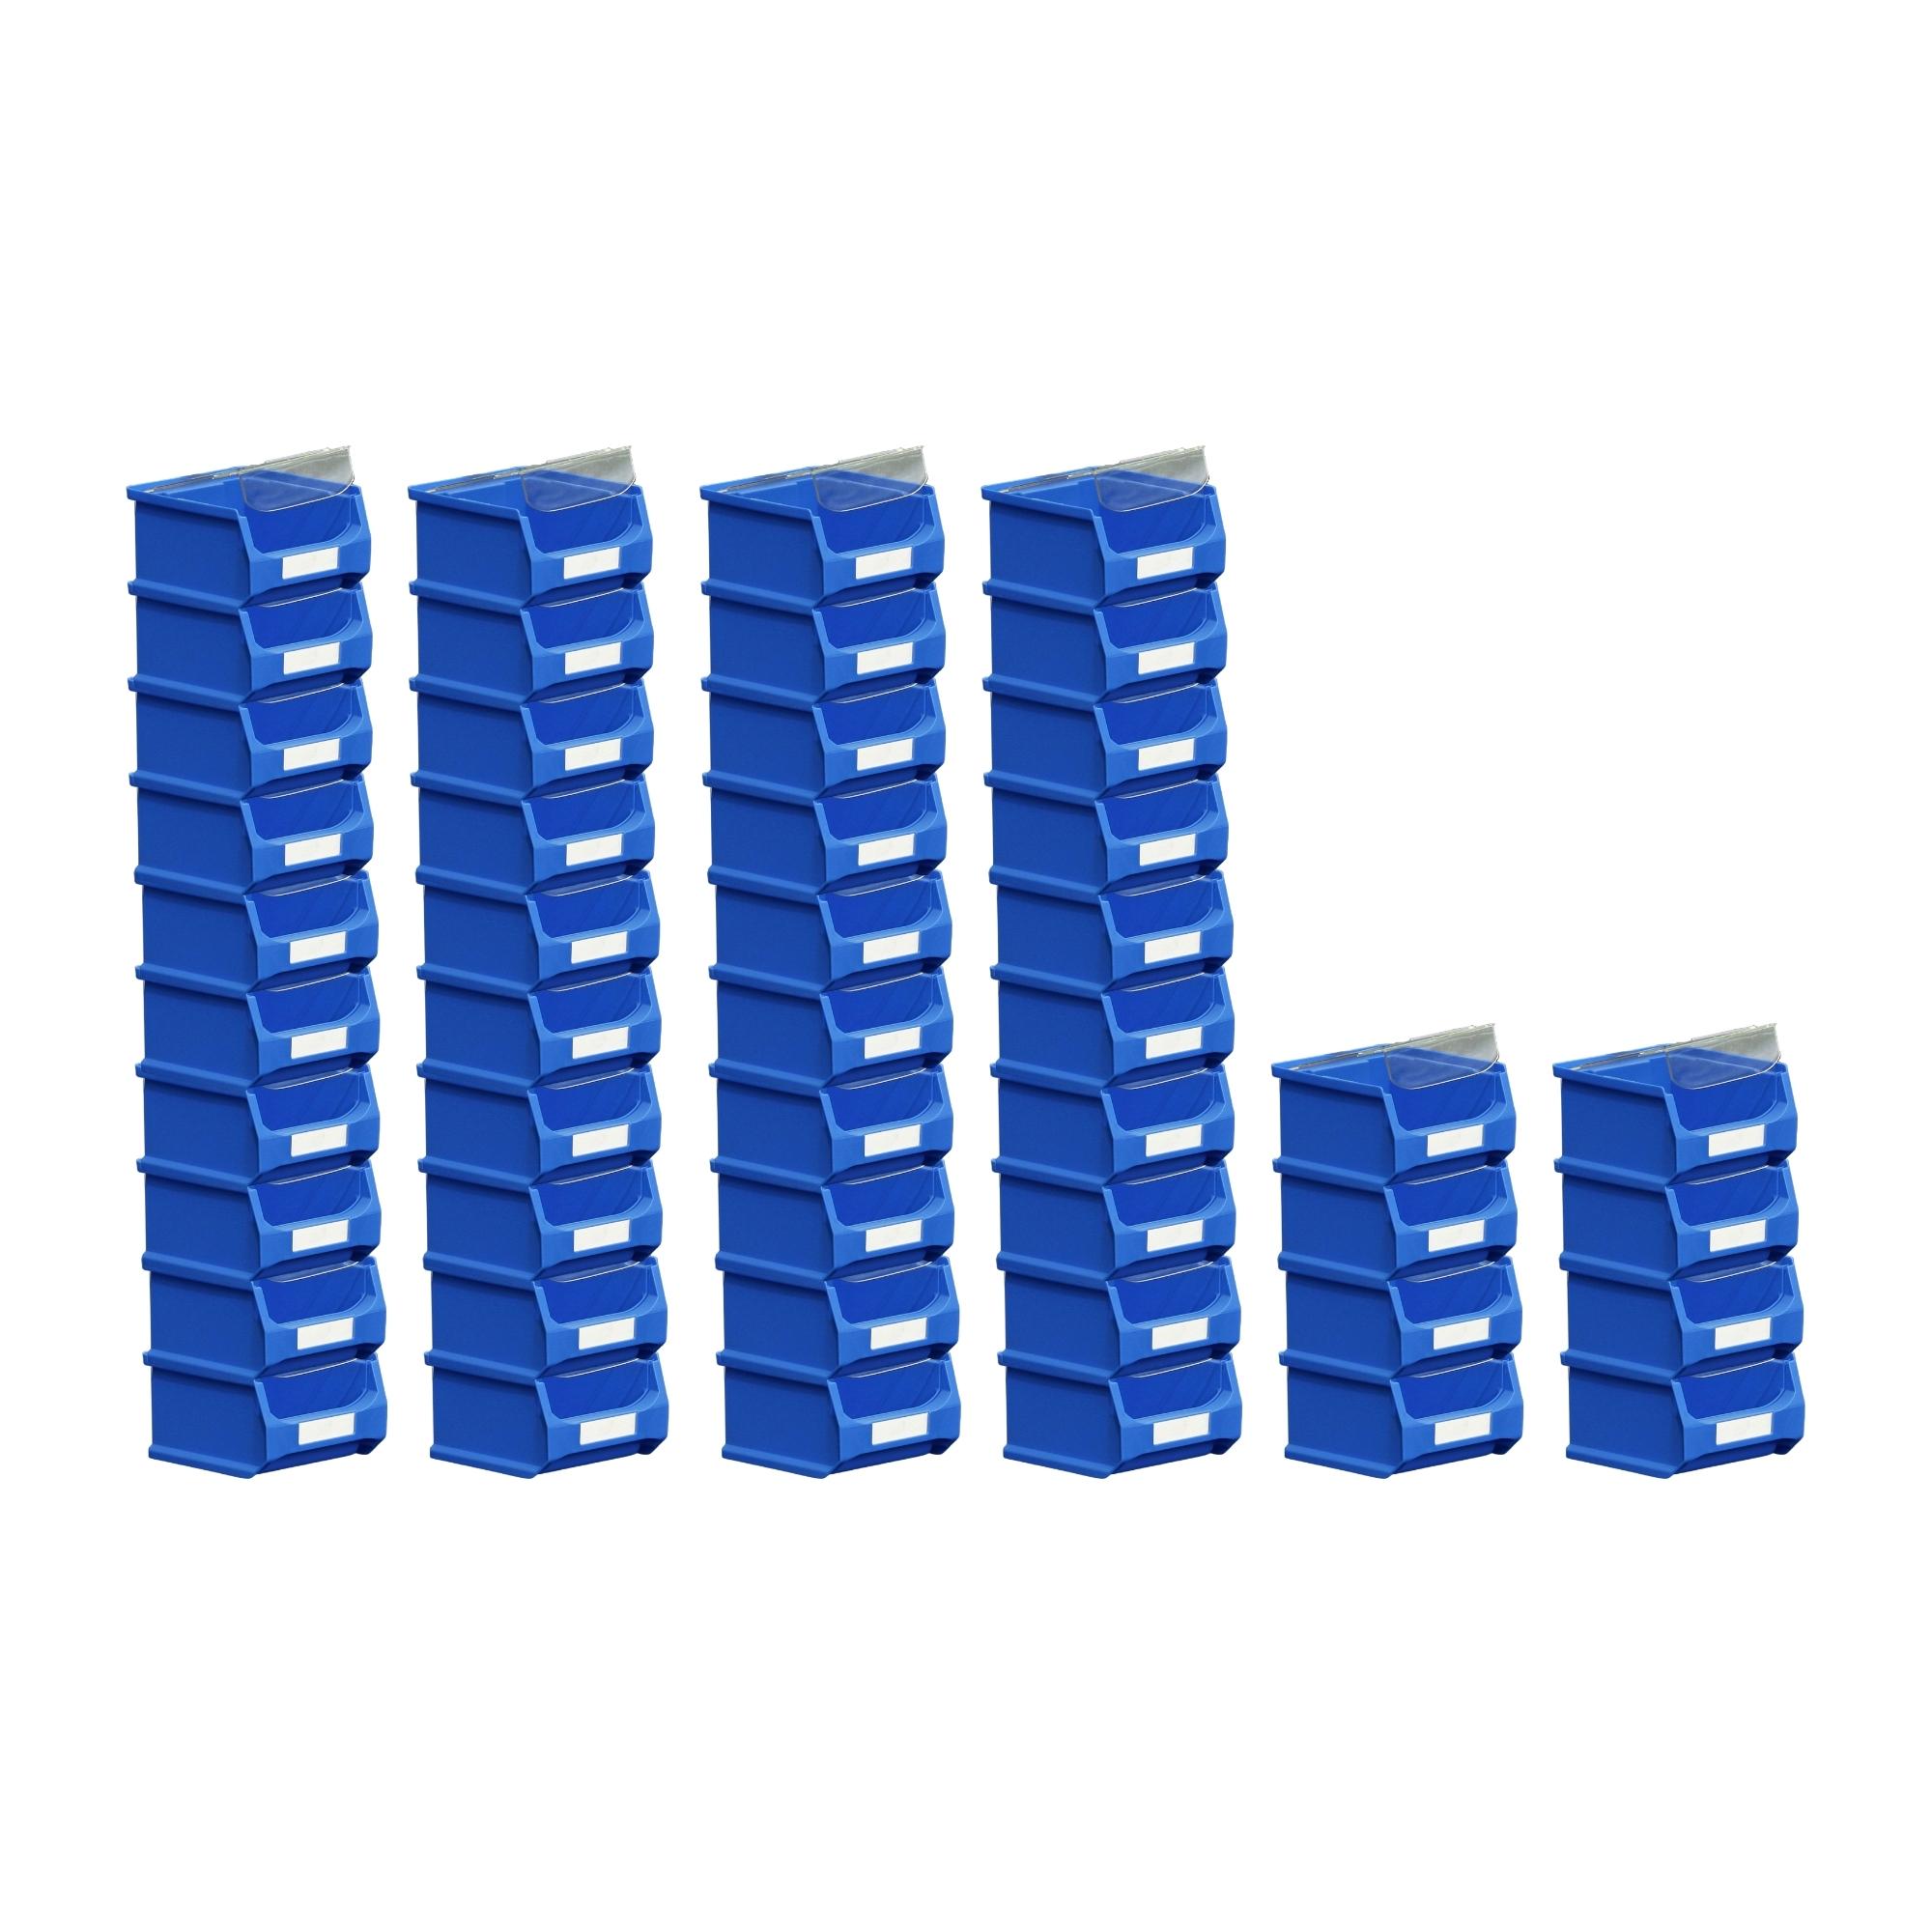 SuperSparSet 48x Blaue Sichtlagerbox 1.0 mit Abdeckung | HxBxT 6x10x10cm | 0,4 Liter | Sichtlagerbehälter, Sichtlagerkasten, Sichtlagerkastensortiment, Sortierbehälter